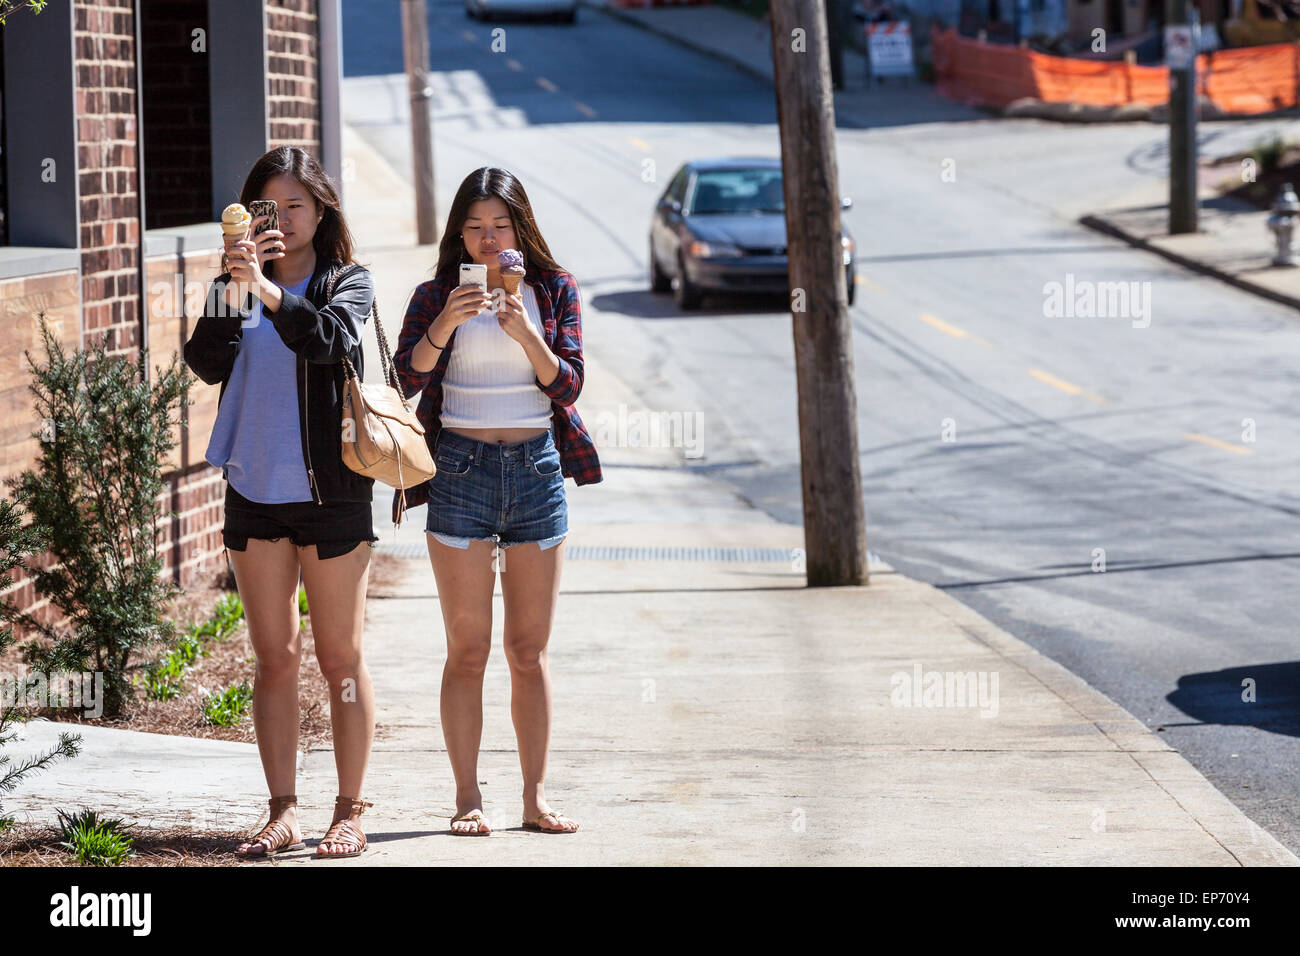 Deux Américains d'origine sur les femmes des glaces et des téléphones cellulaires, Inman Park, Atlanta, Georgia, USA Banque D'Images